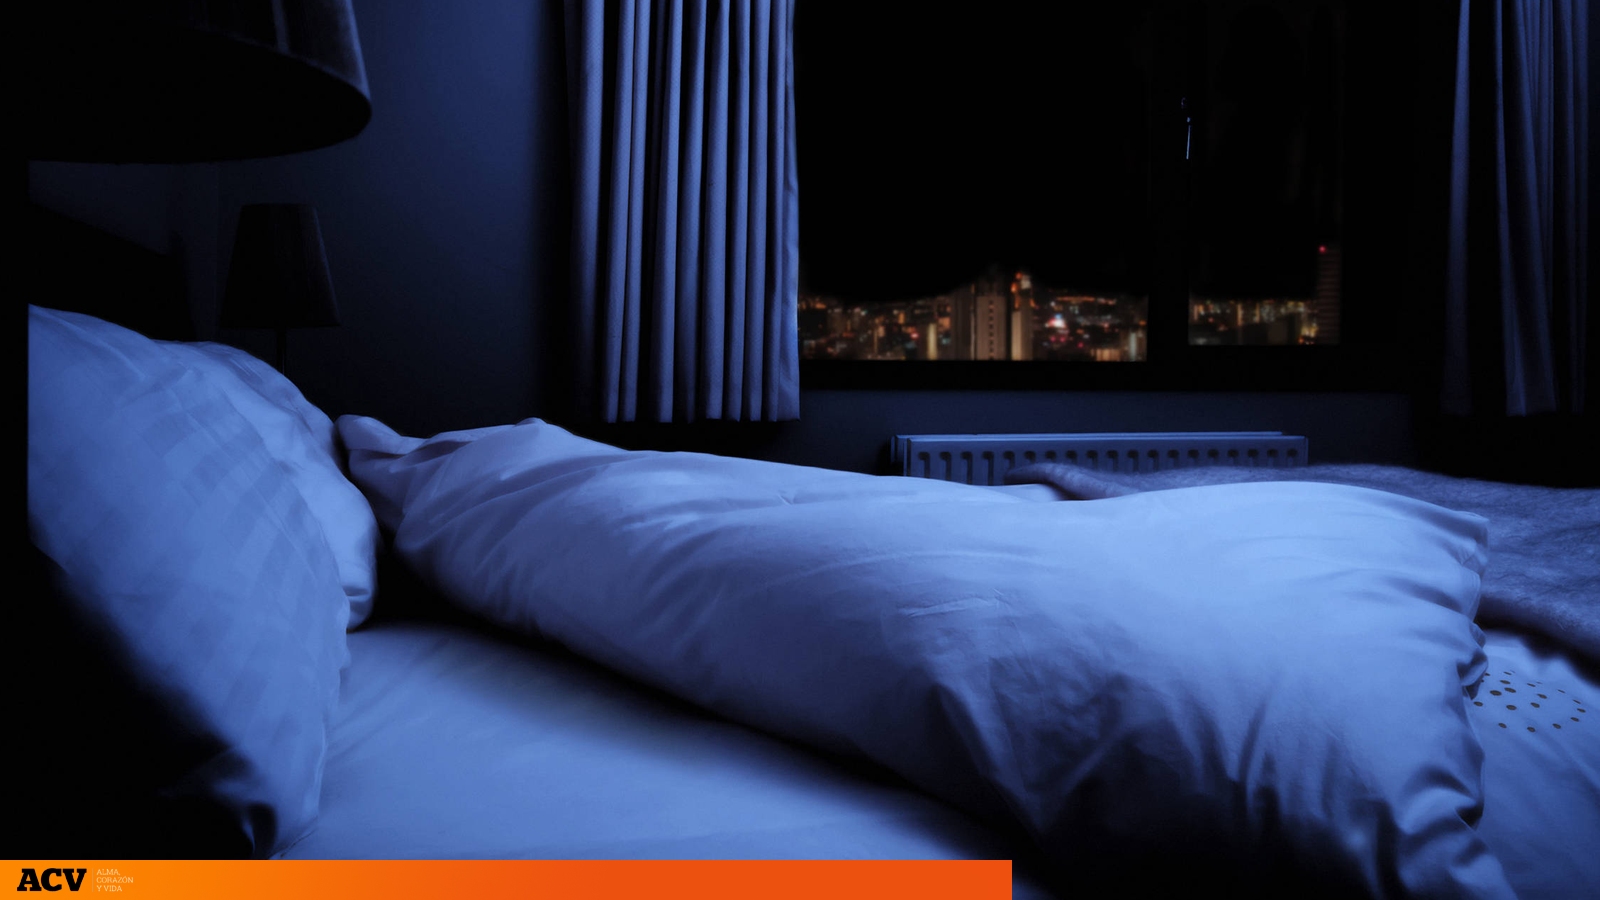 Dormir con humedad en una habitación ¿Qué consecuencias tiene?